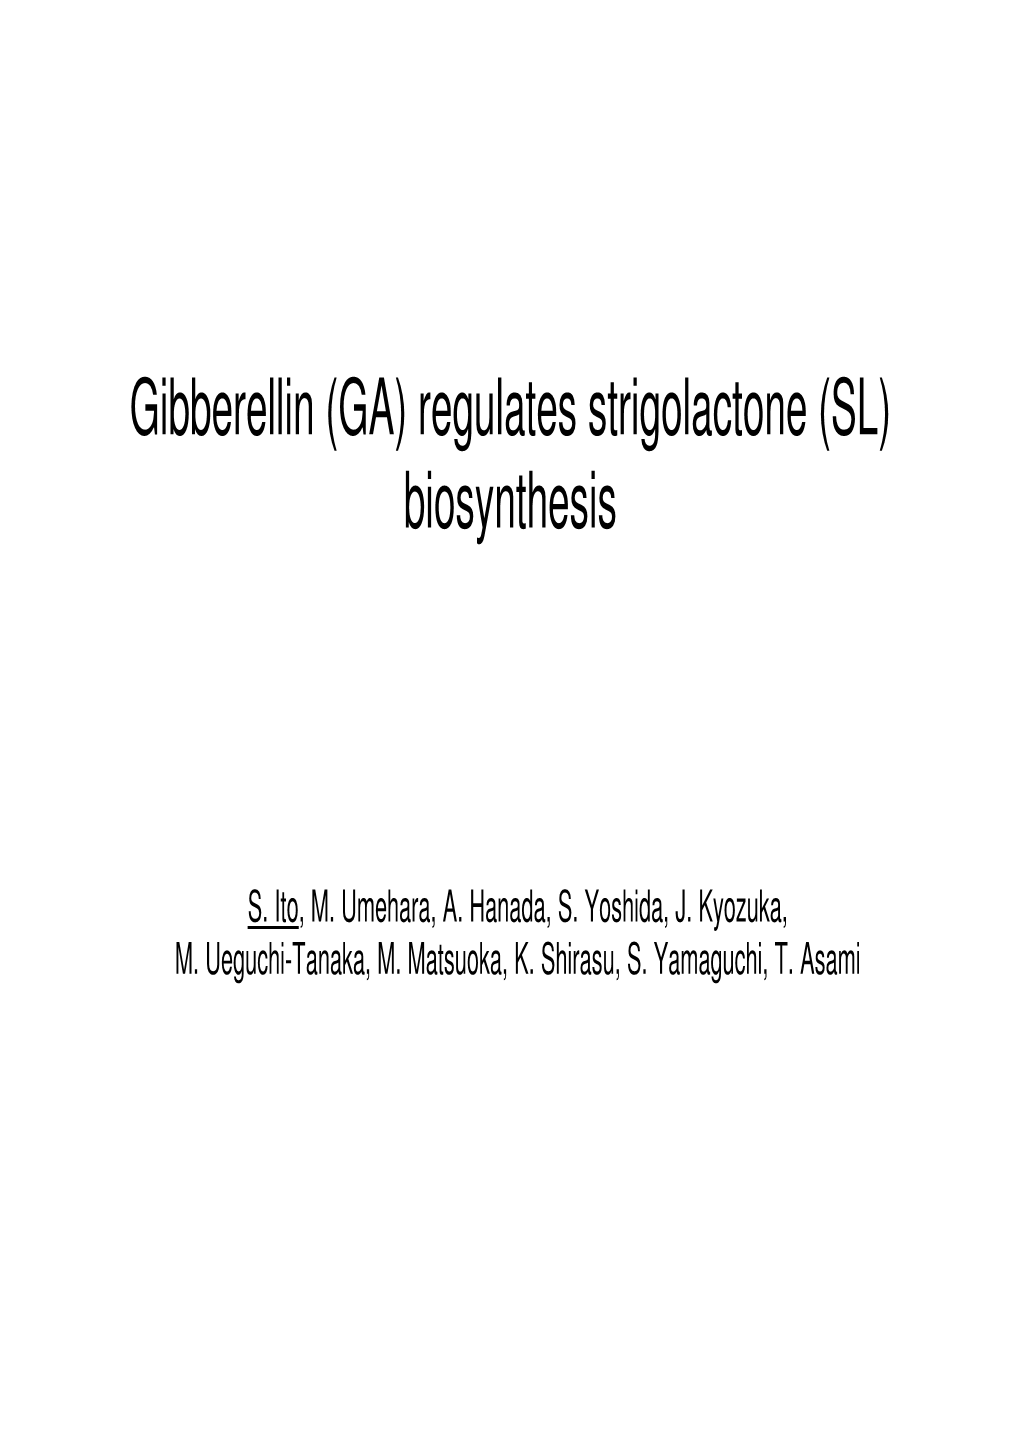 Gibberellin (GA) Regulates Strigolactone (SL) Biosynthesis